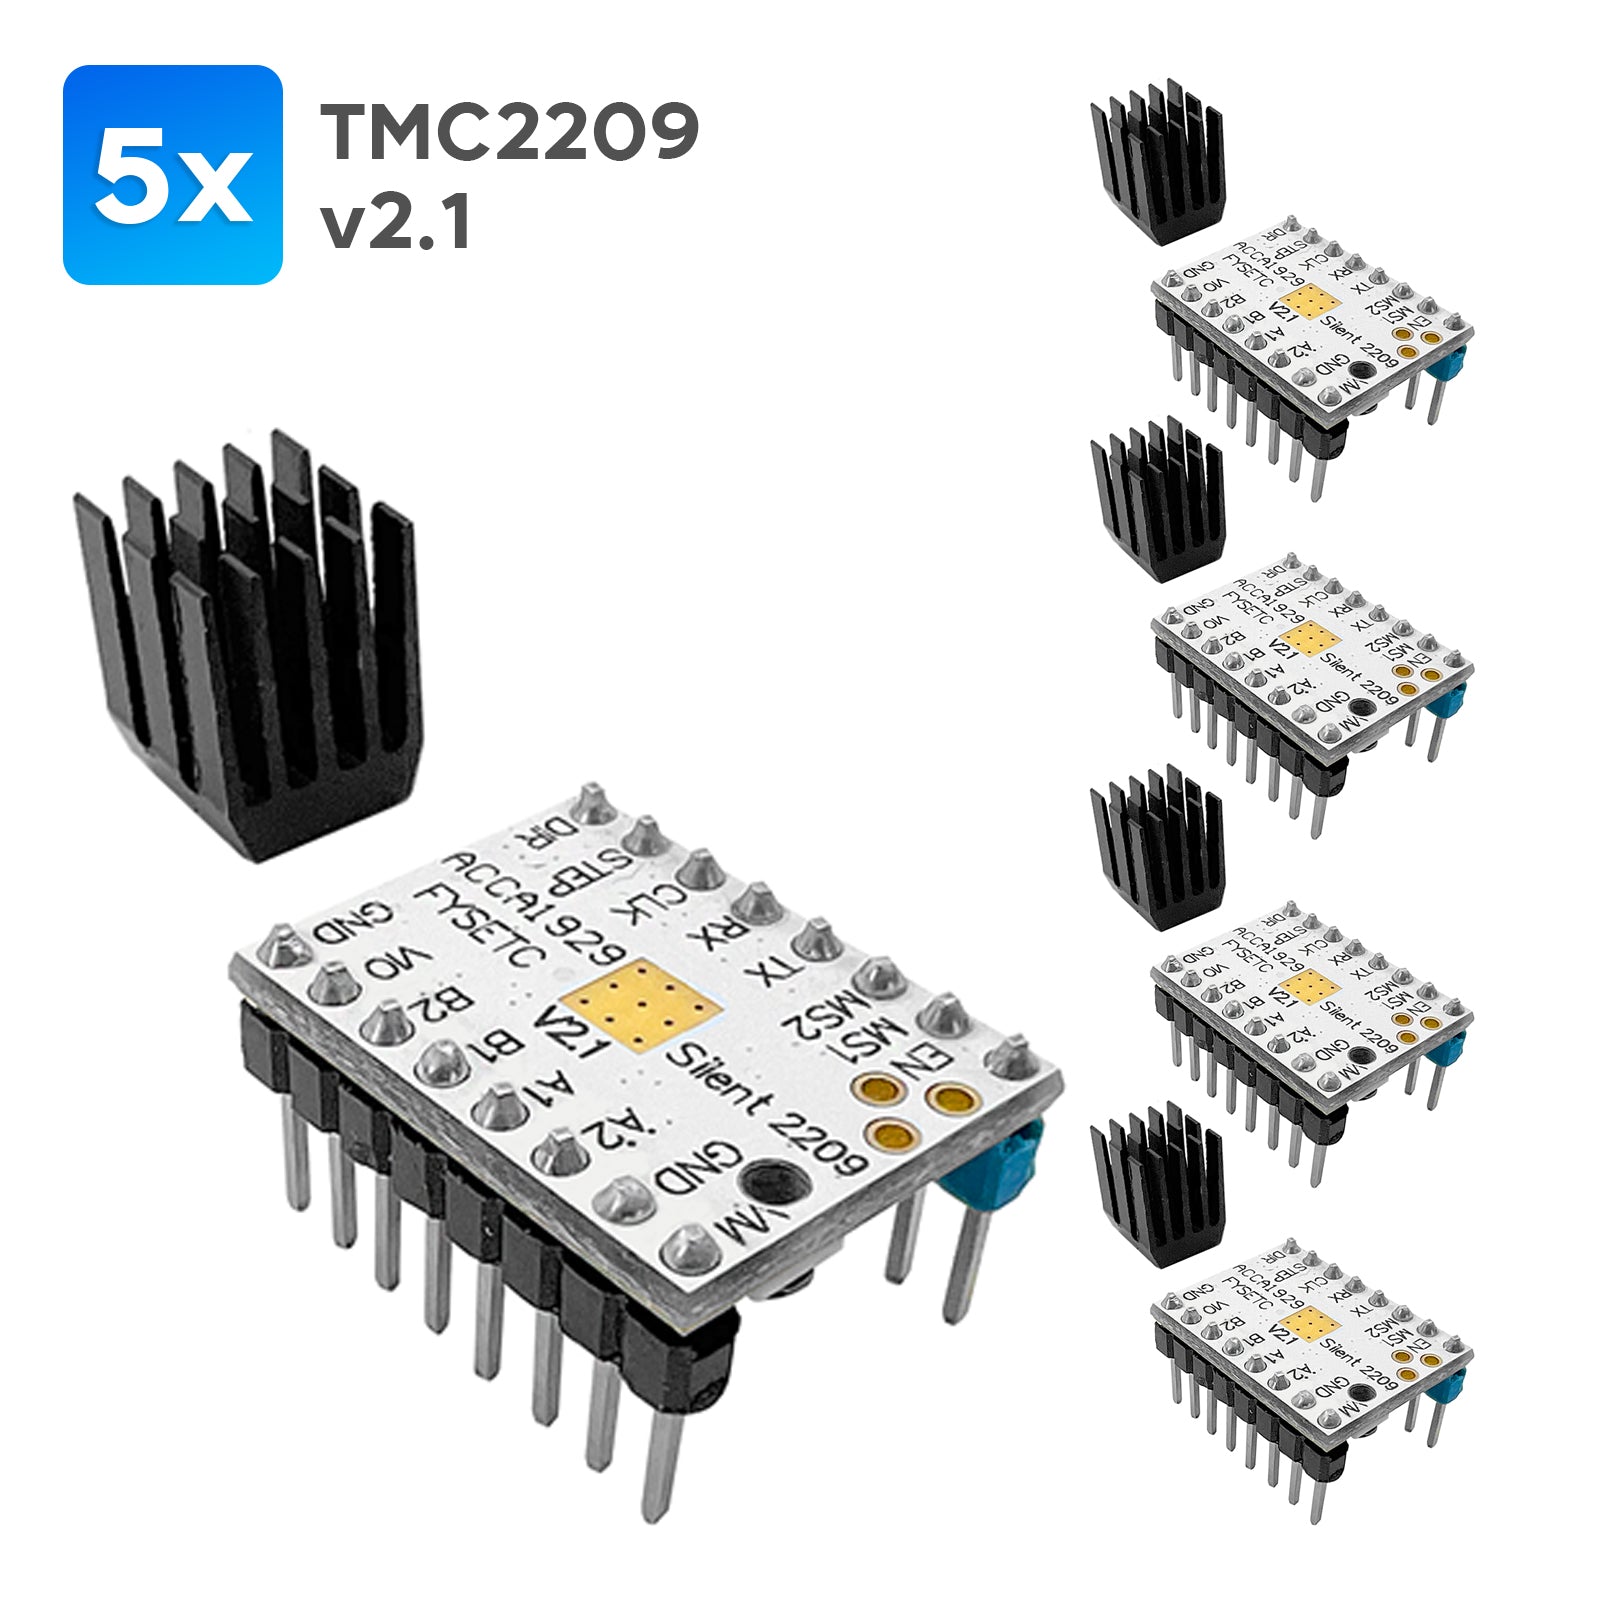 Der TMC2209 inklusive Kühlkörper schrittmotor für 3D Drucker. im dinngs.de Shop kaufen!